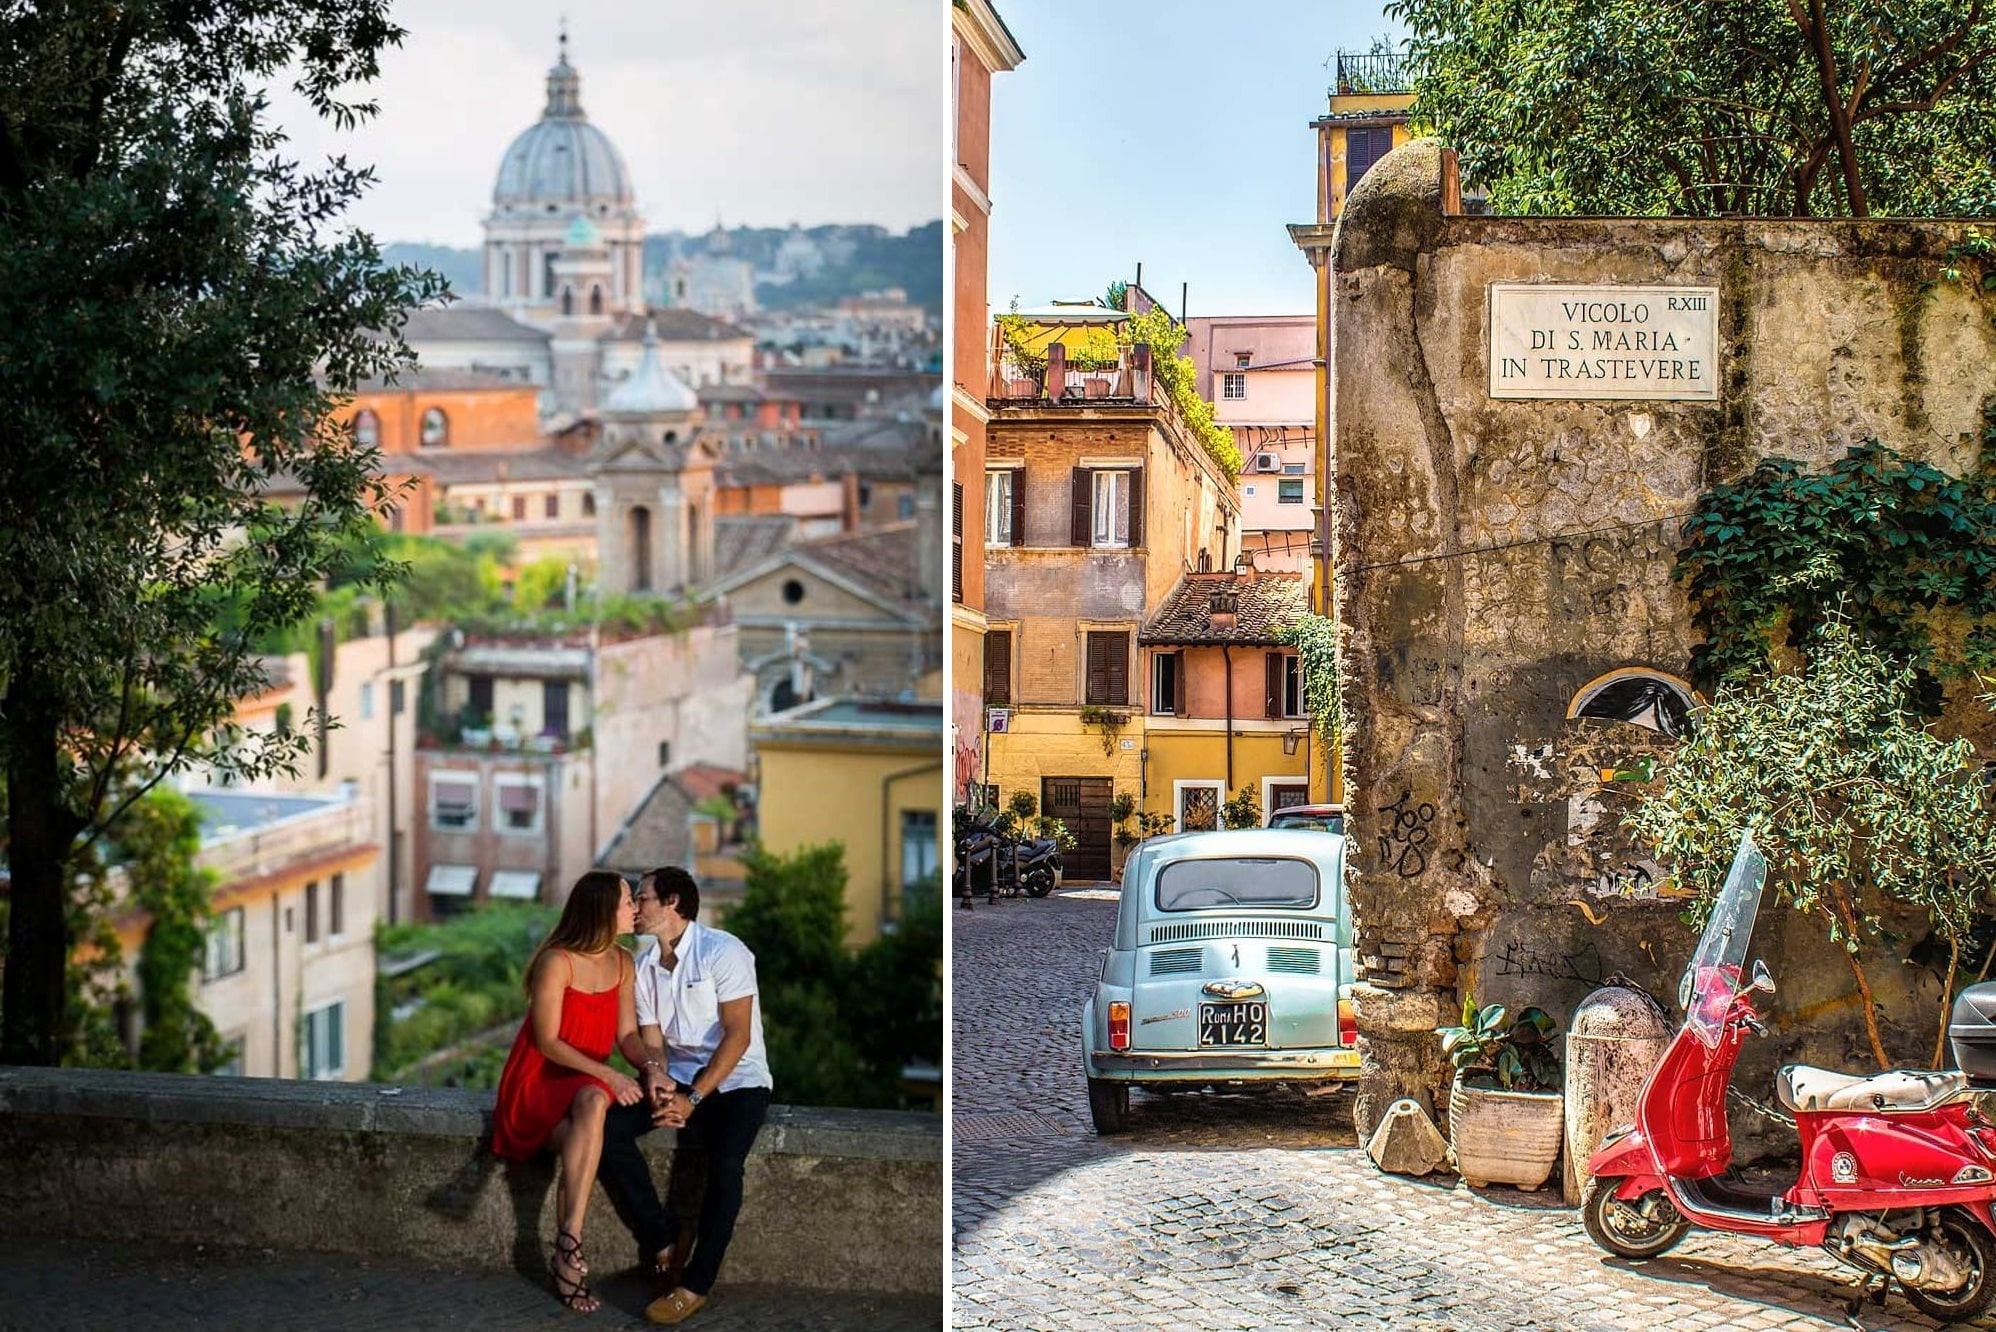 Где лучше жить в Риме туристу